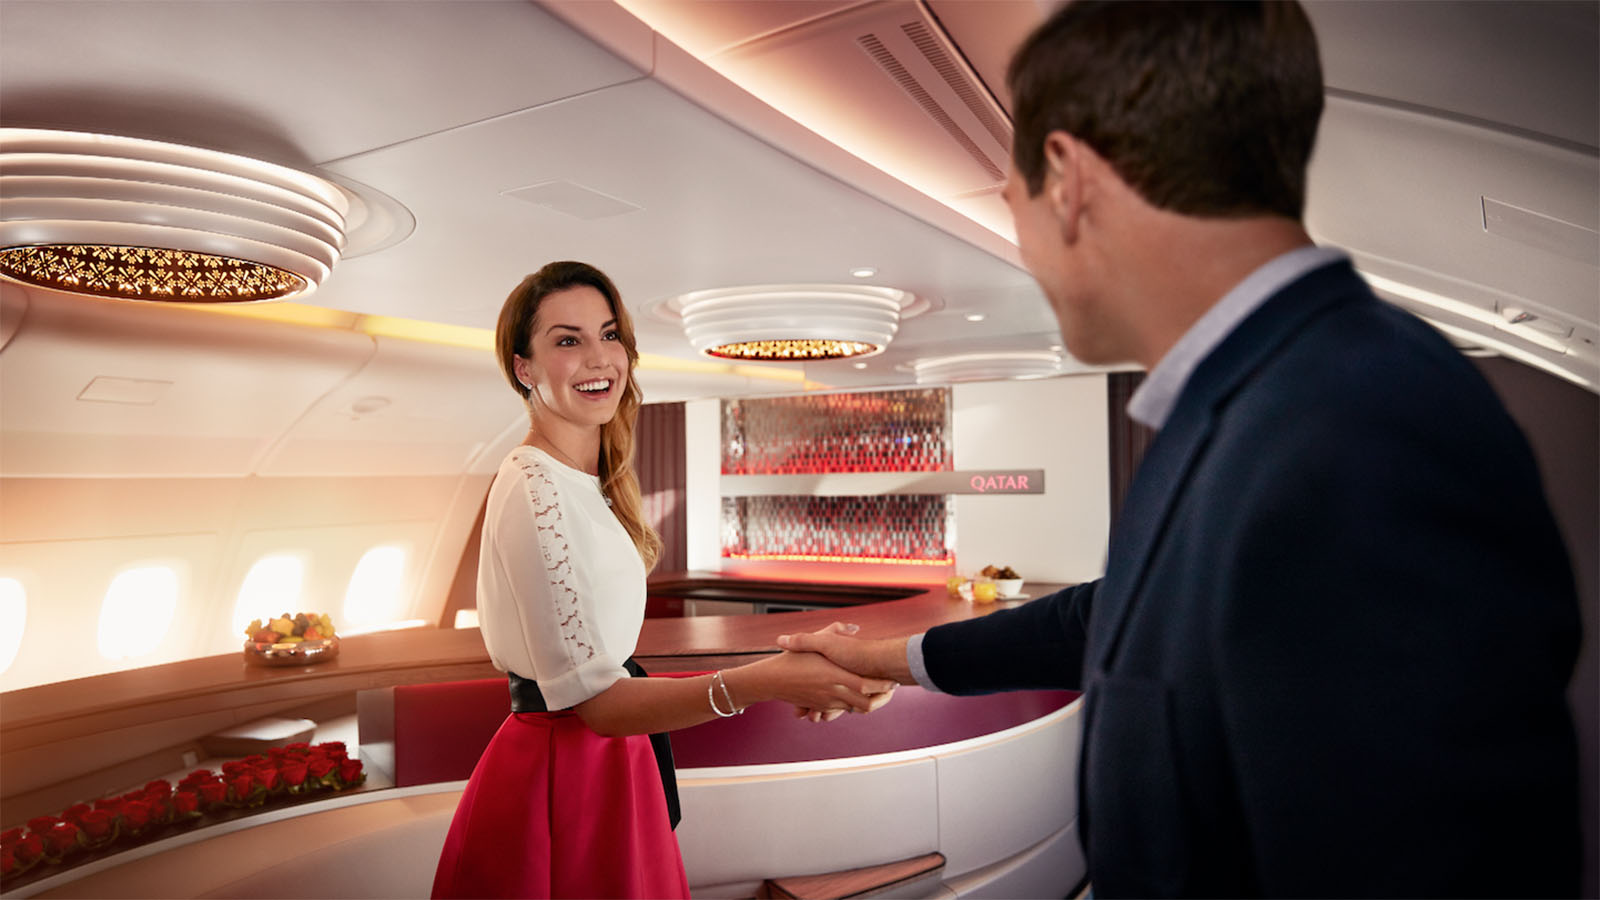 Book a Reward Seat on Qatar Airways using Velocity Points.